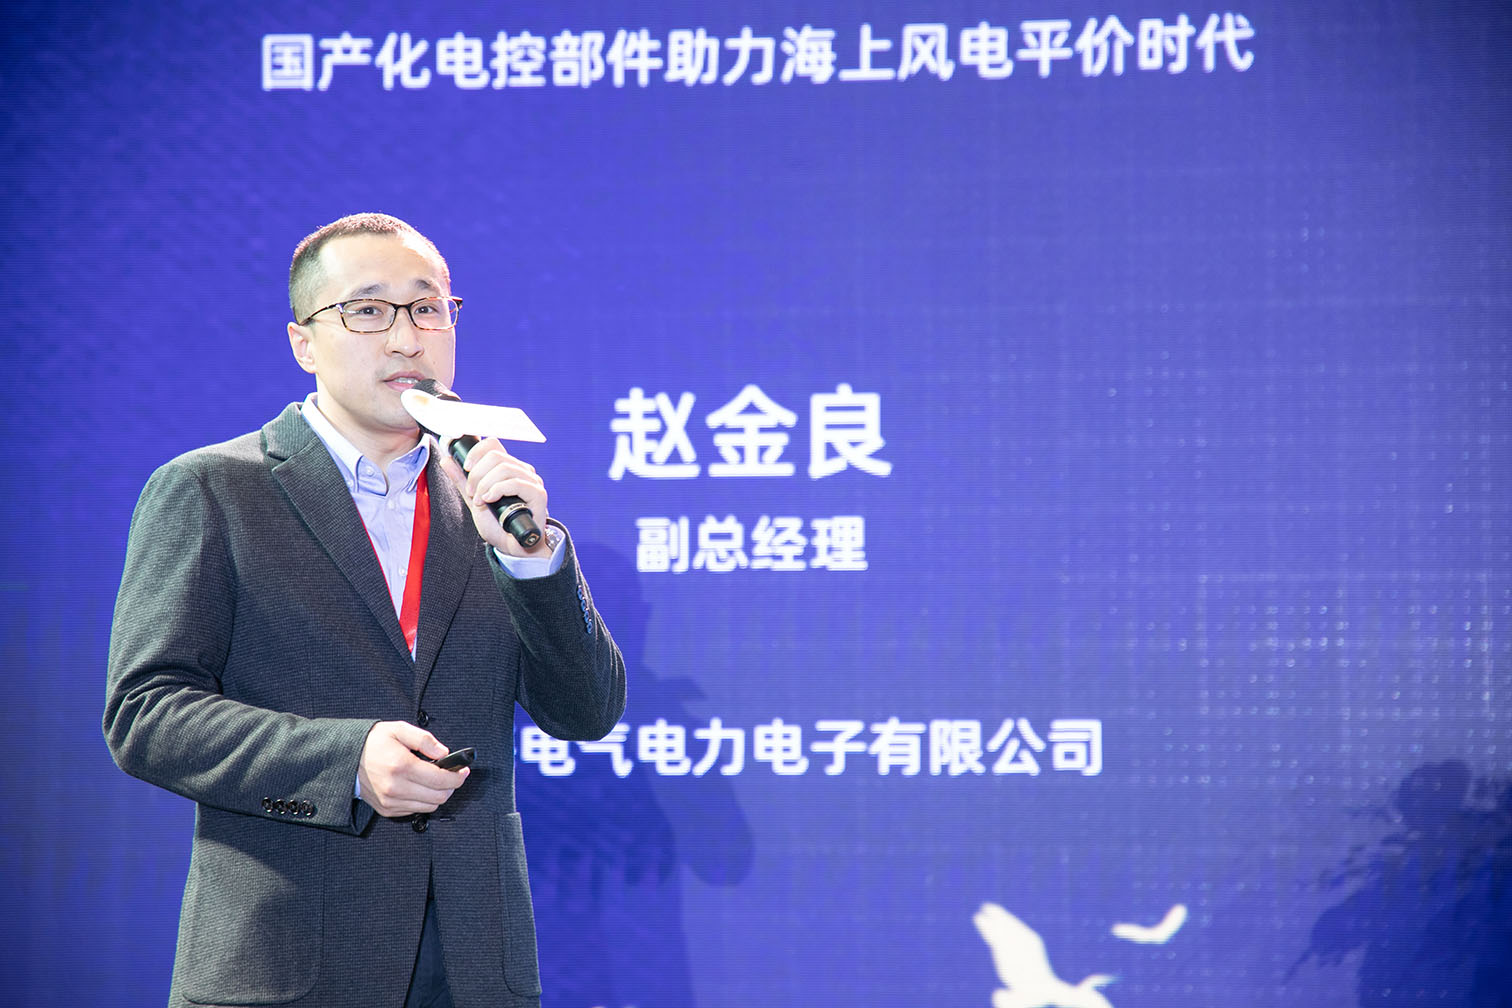 上海电气电力电子有限公司副总经理  赵金良